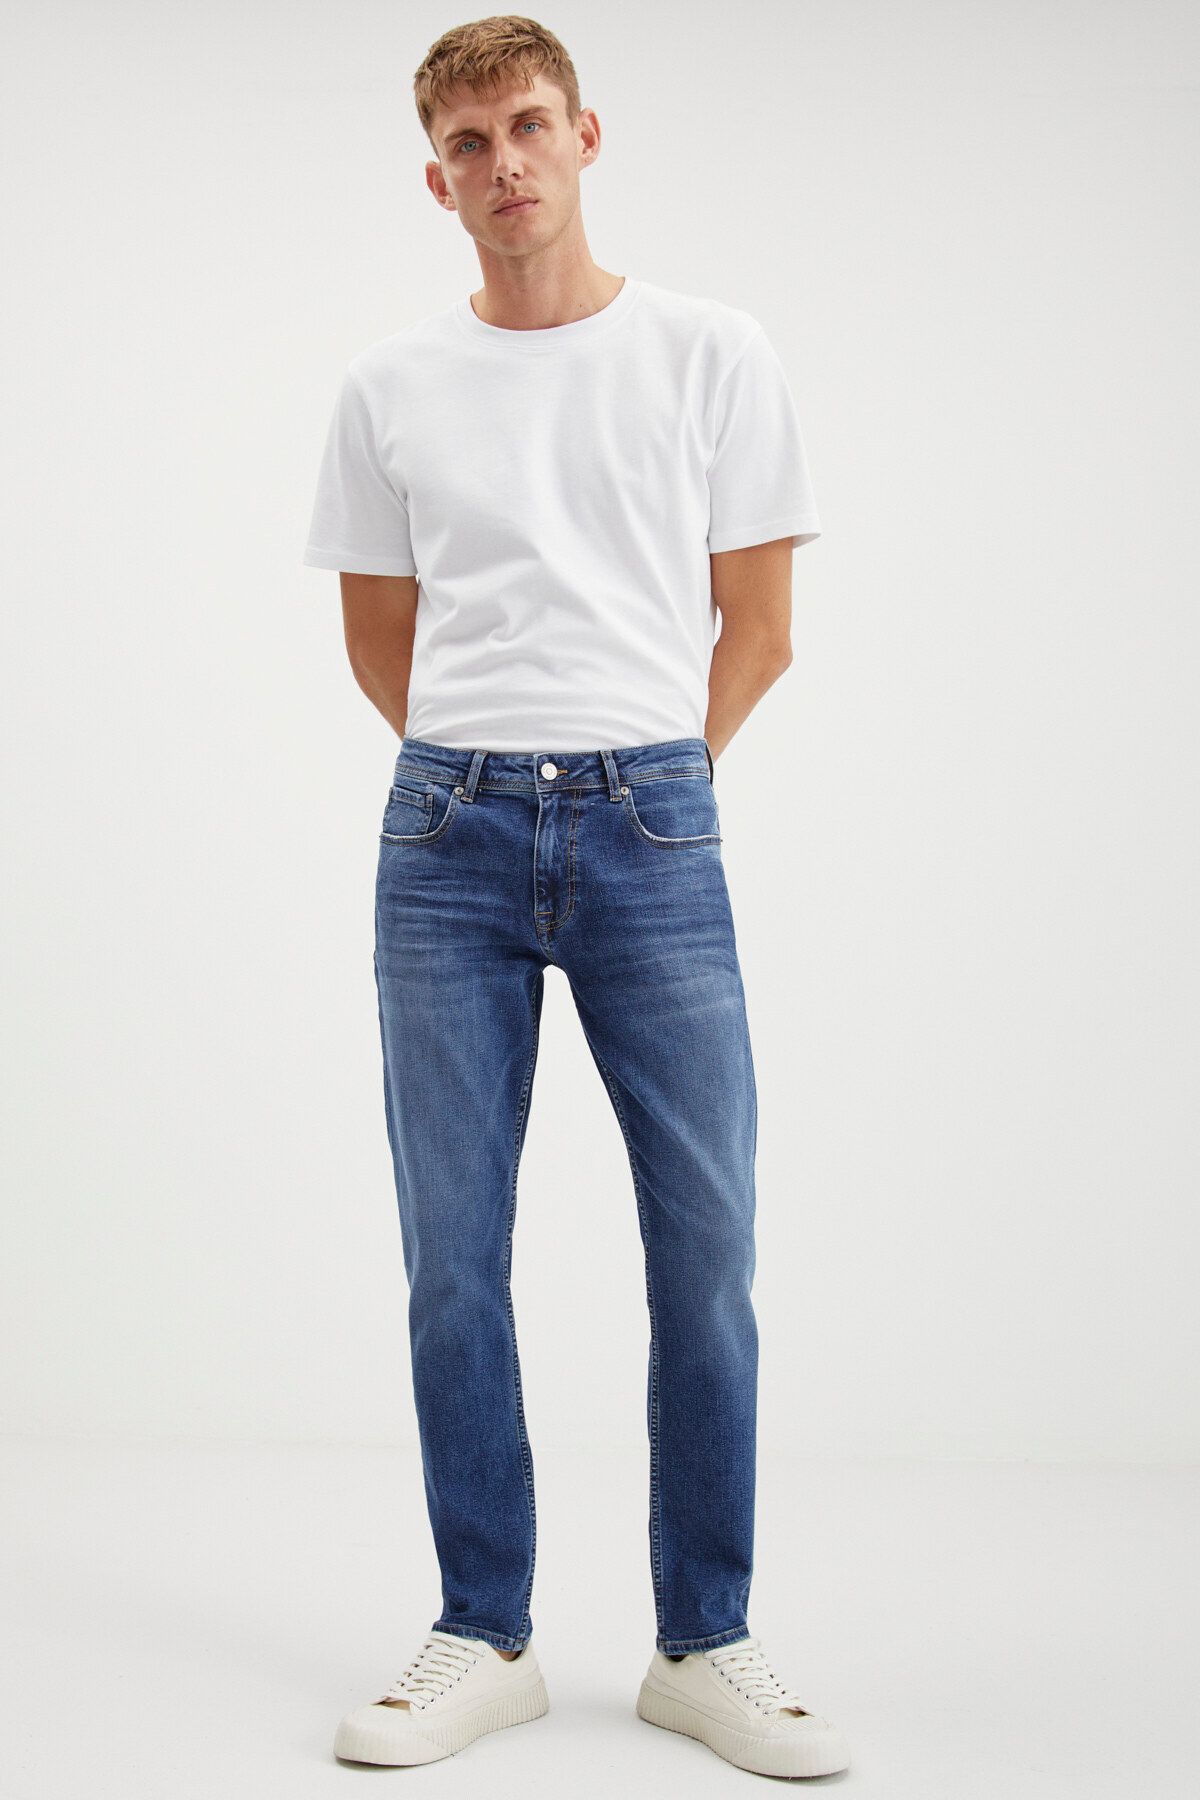 GRIMELANGE Herman Erkek Denim Kalın Dokulu Slim Fit Kalıplı Mavi Jeans